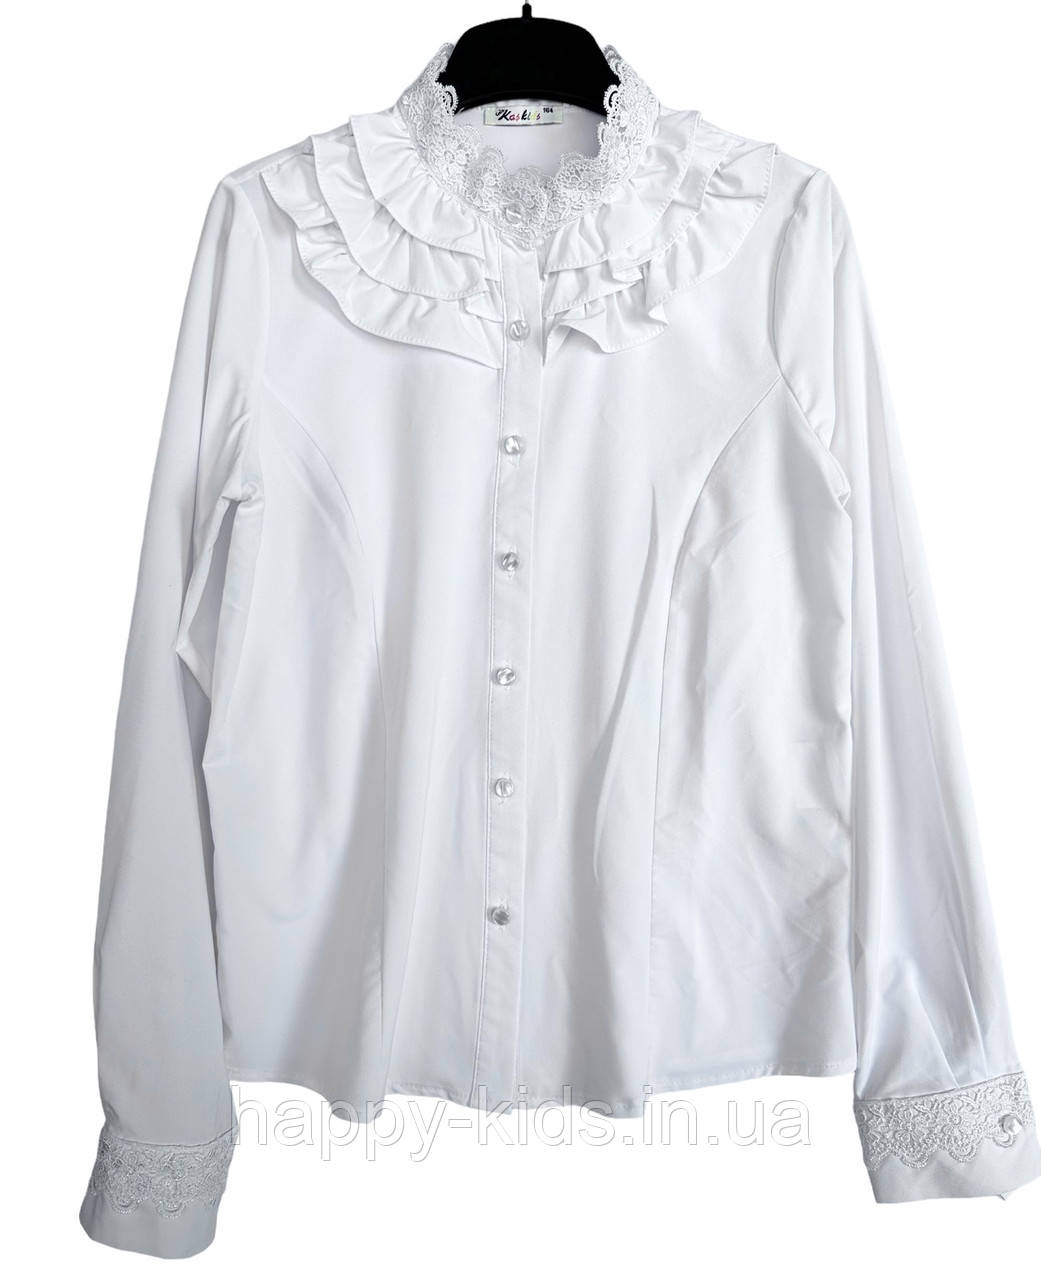 Біла святкова блузка для дівчинки 158-164 см